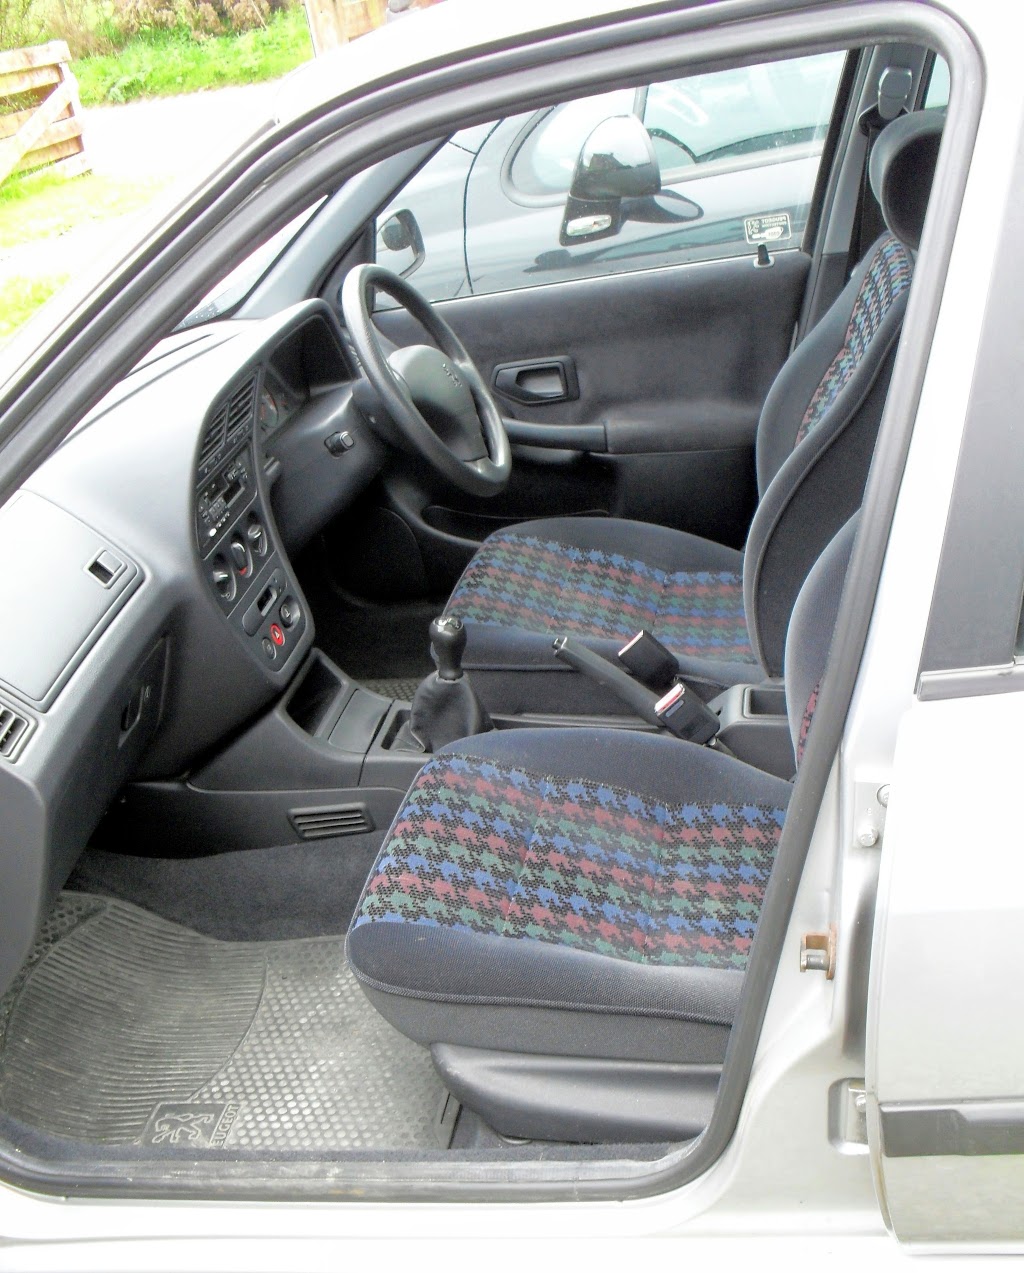 1998 Peugeot 306 Sedan interior - passenger's side front